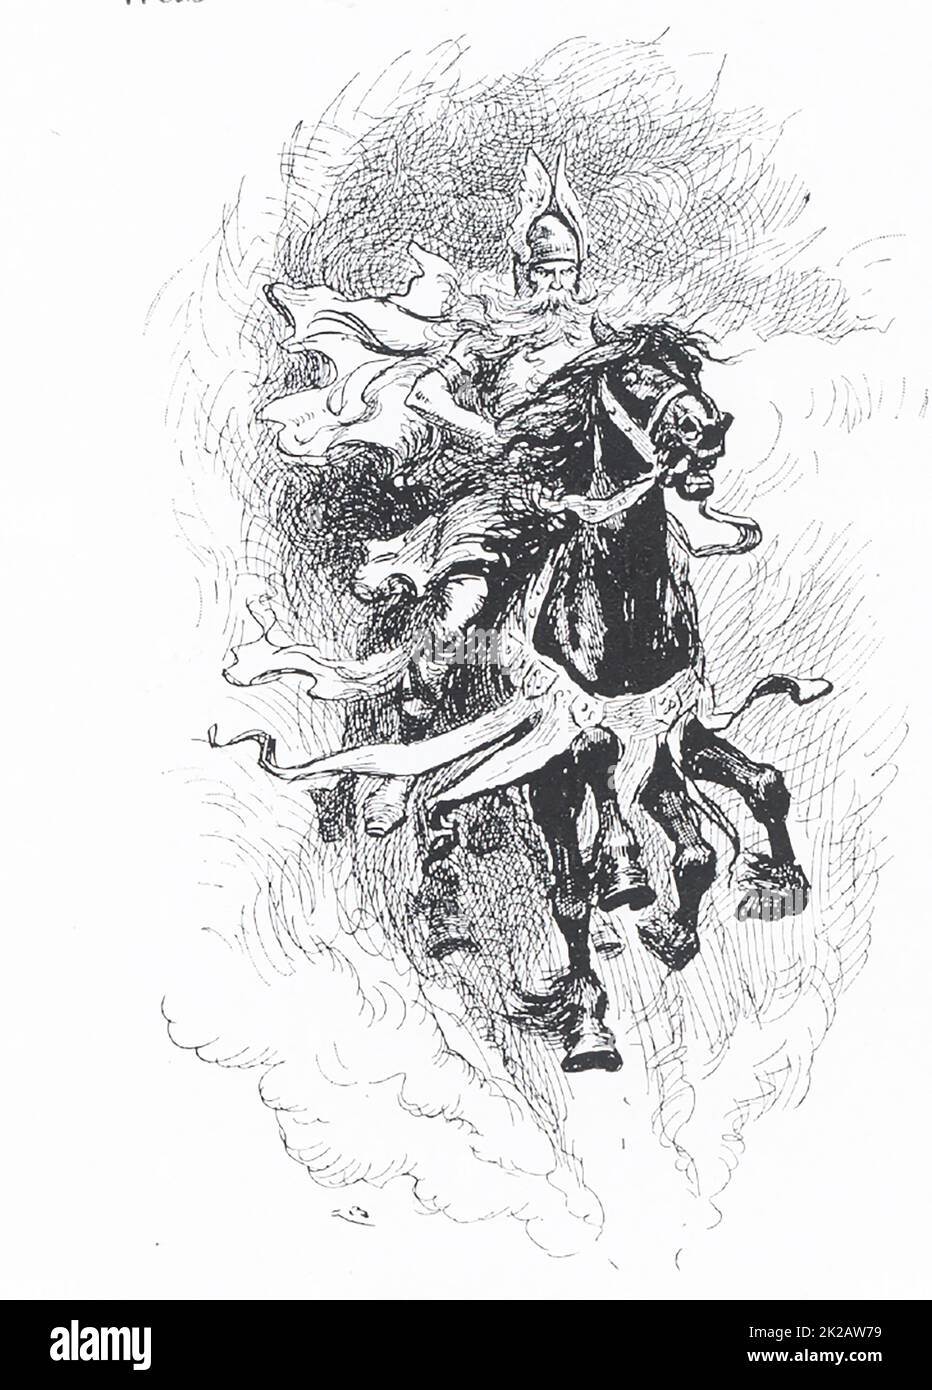 In questa illustrazione del 1913, Odin ha montato Sleipner, il suo cavallo a otto zampe. Nella mitologia scandinava (norrena), Odino era uno dei principali dei e il governatore di Asgard (il paese o capitale degli dei norrani). È spesso raffigurato con due corvi, Hugin (anche Huginn - e che significa 'pensiero') e Munin (anche Muninn e che significa 'memoria') e due lupi, Geri e Freki (entrambi significano 'avido' o quello ravenoso'). Questa figura risale al 1913. Foto Stock